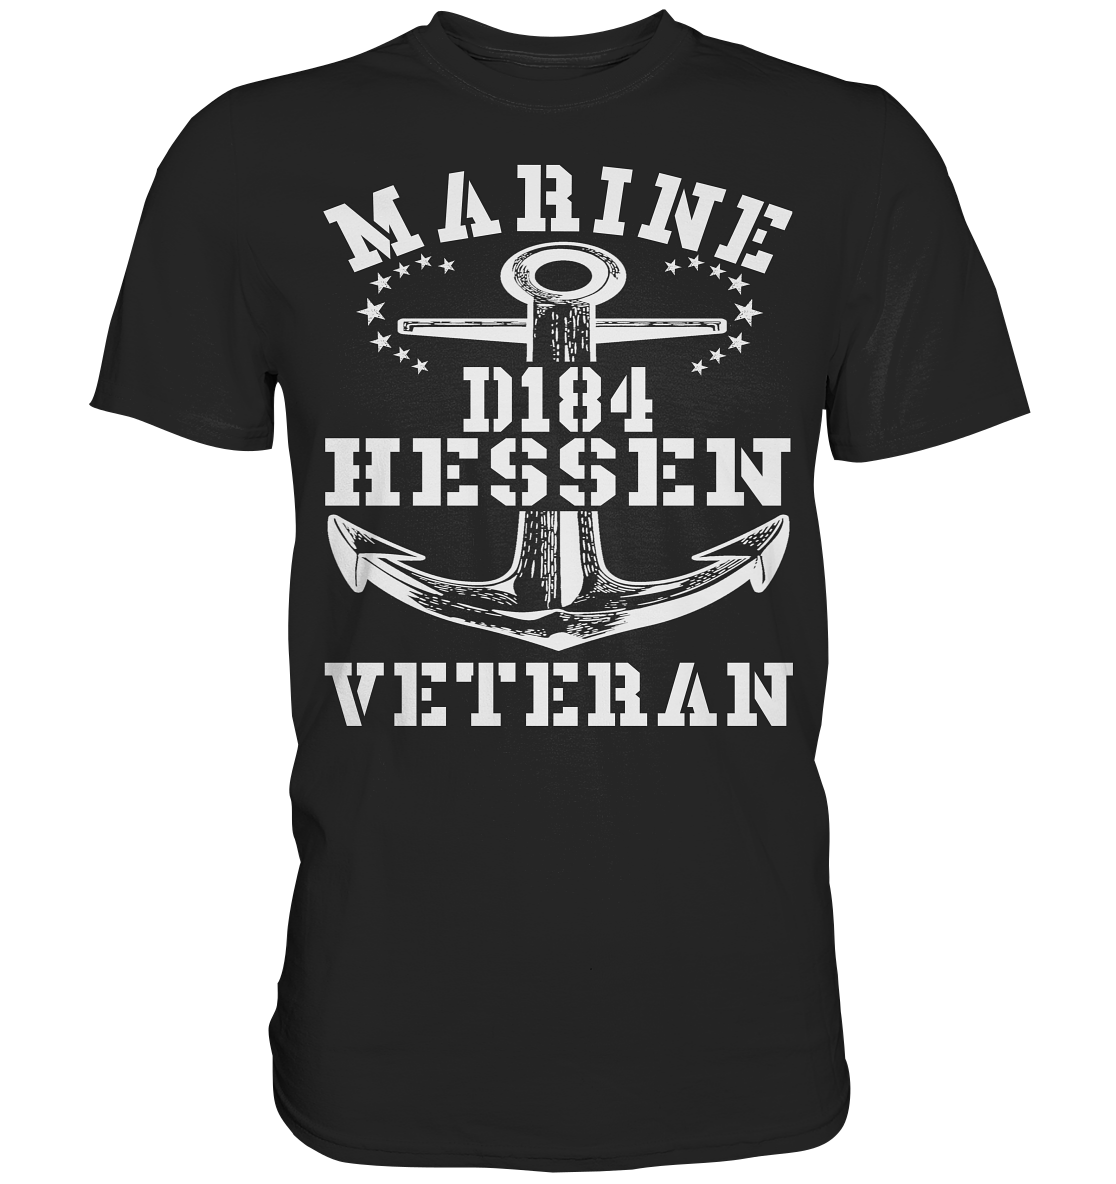 MV Zerstörer D184 HESSEN - Premium Shirt